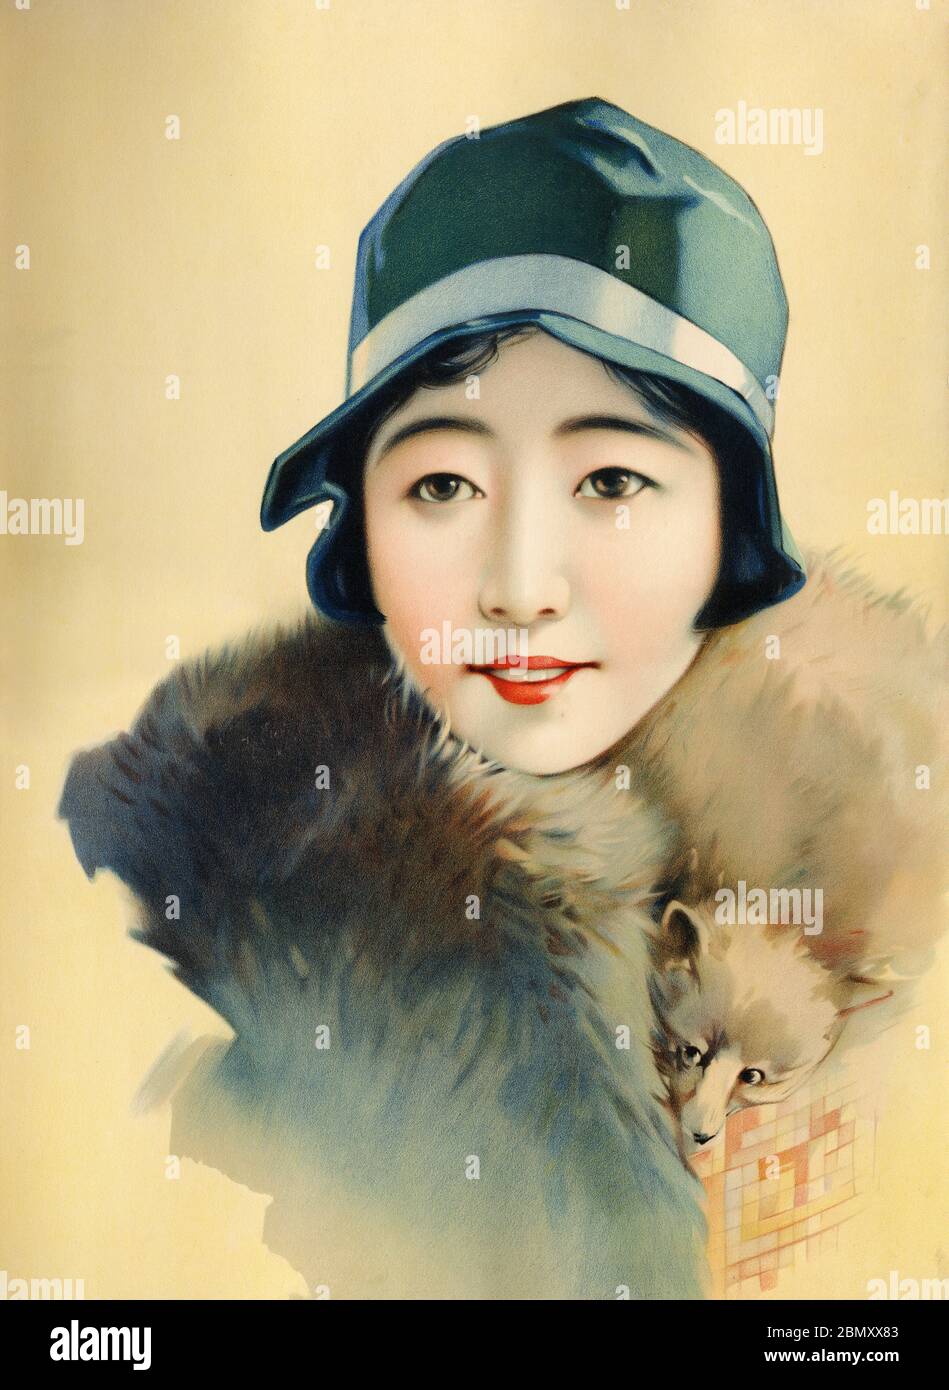 [ 1920er Japan - Illustration der japanischen Frau trägt einen Hut ] - schöne japanische Frau trägt einen Fuchspelz gestohlen. Dieses Kunstwerk wurde als Plakatmuster (ポスターの原画見本) während der Taisho-Periode (1912-1926) verwendet. Vintage-Poster des 20. Jahrhunderts. Stockfoto